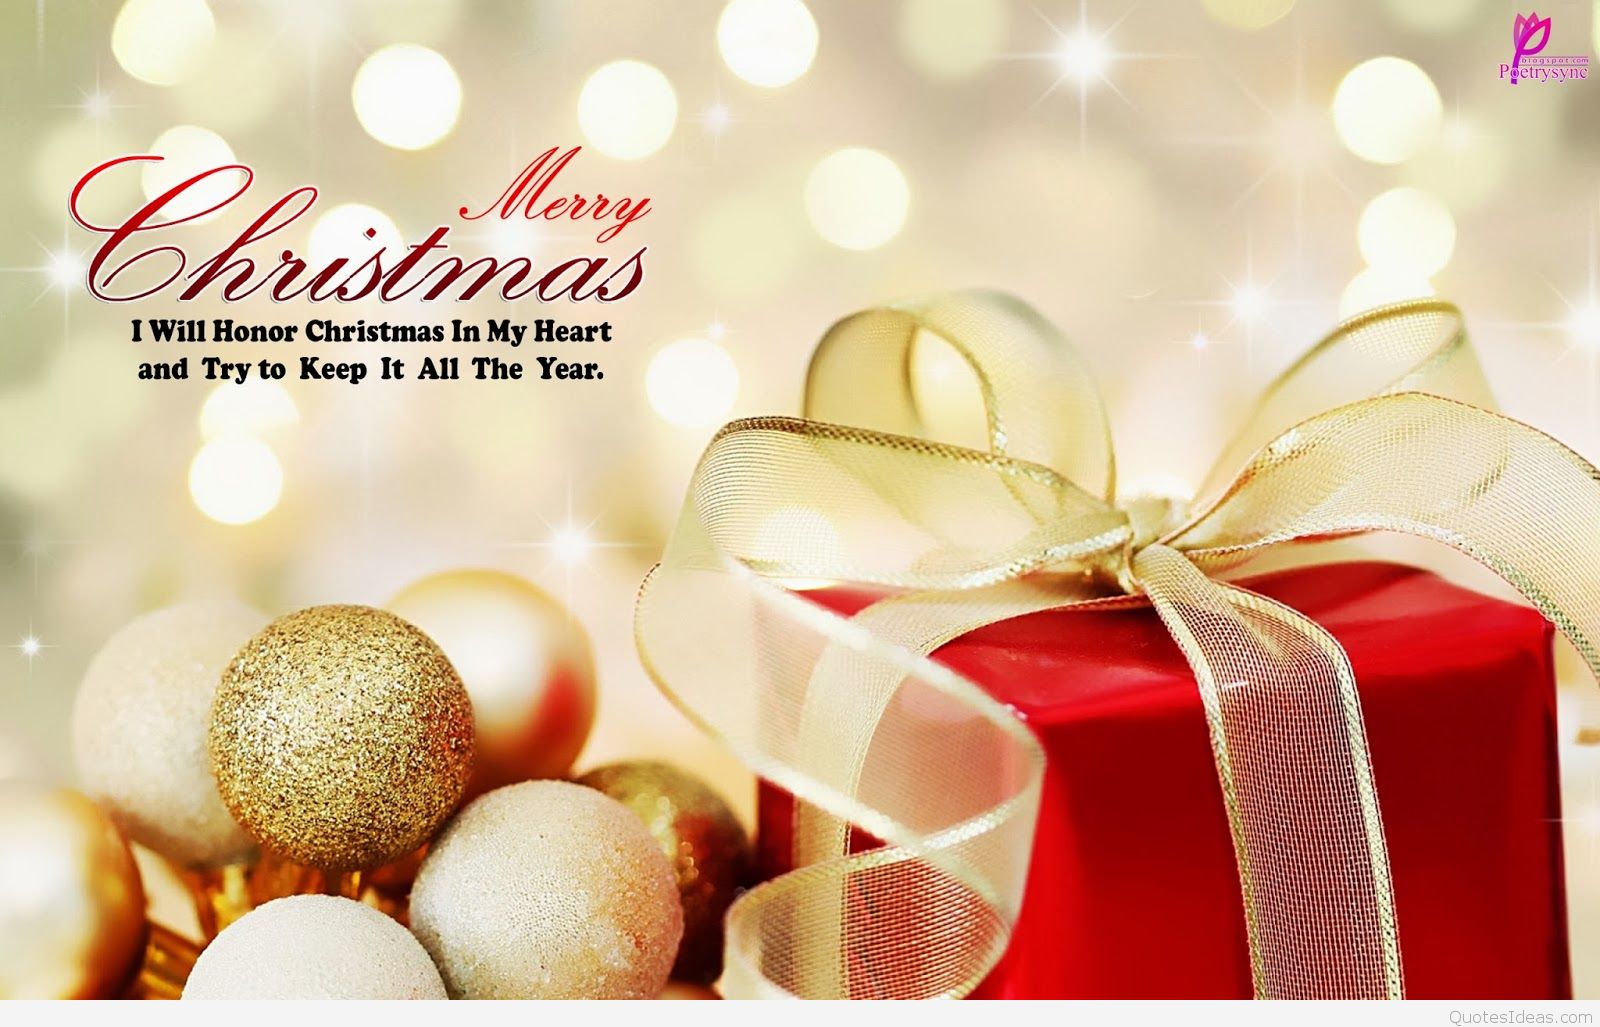 papel tapiz de regalo,nochebuena,presente,navidad,decoración navideña,fiesta